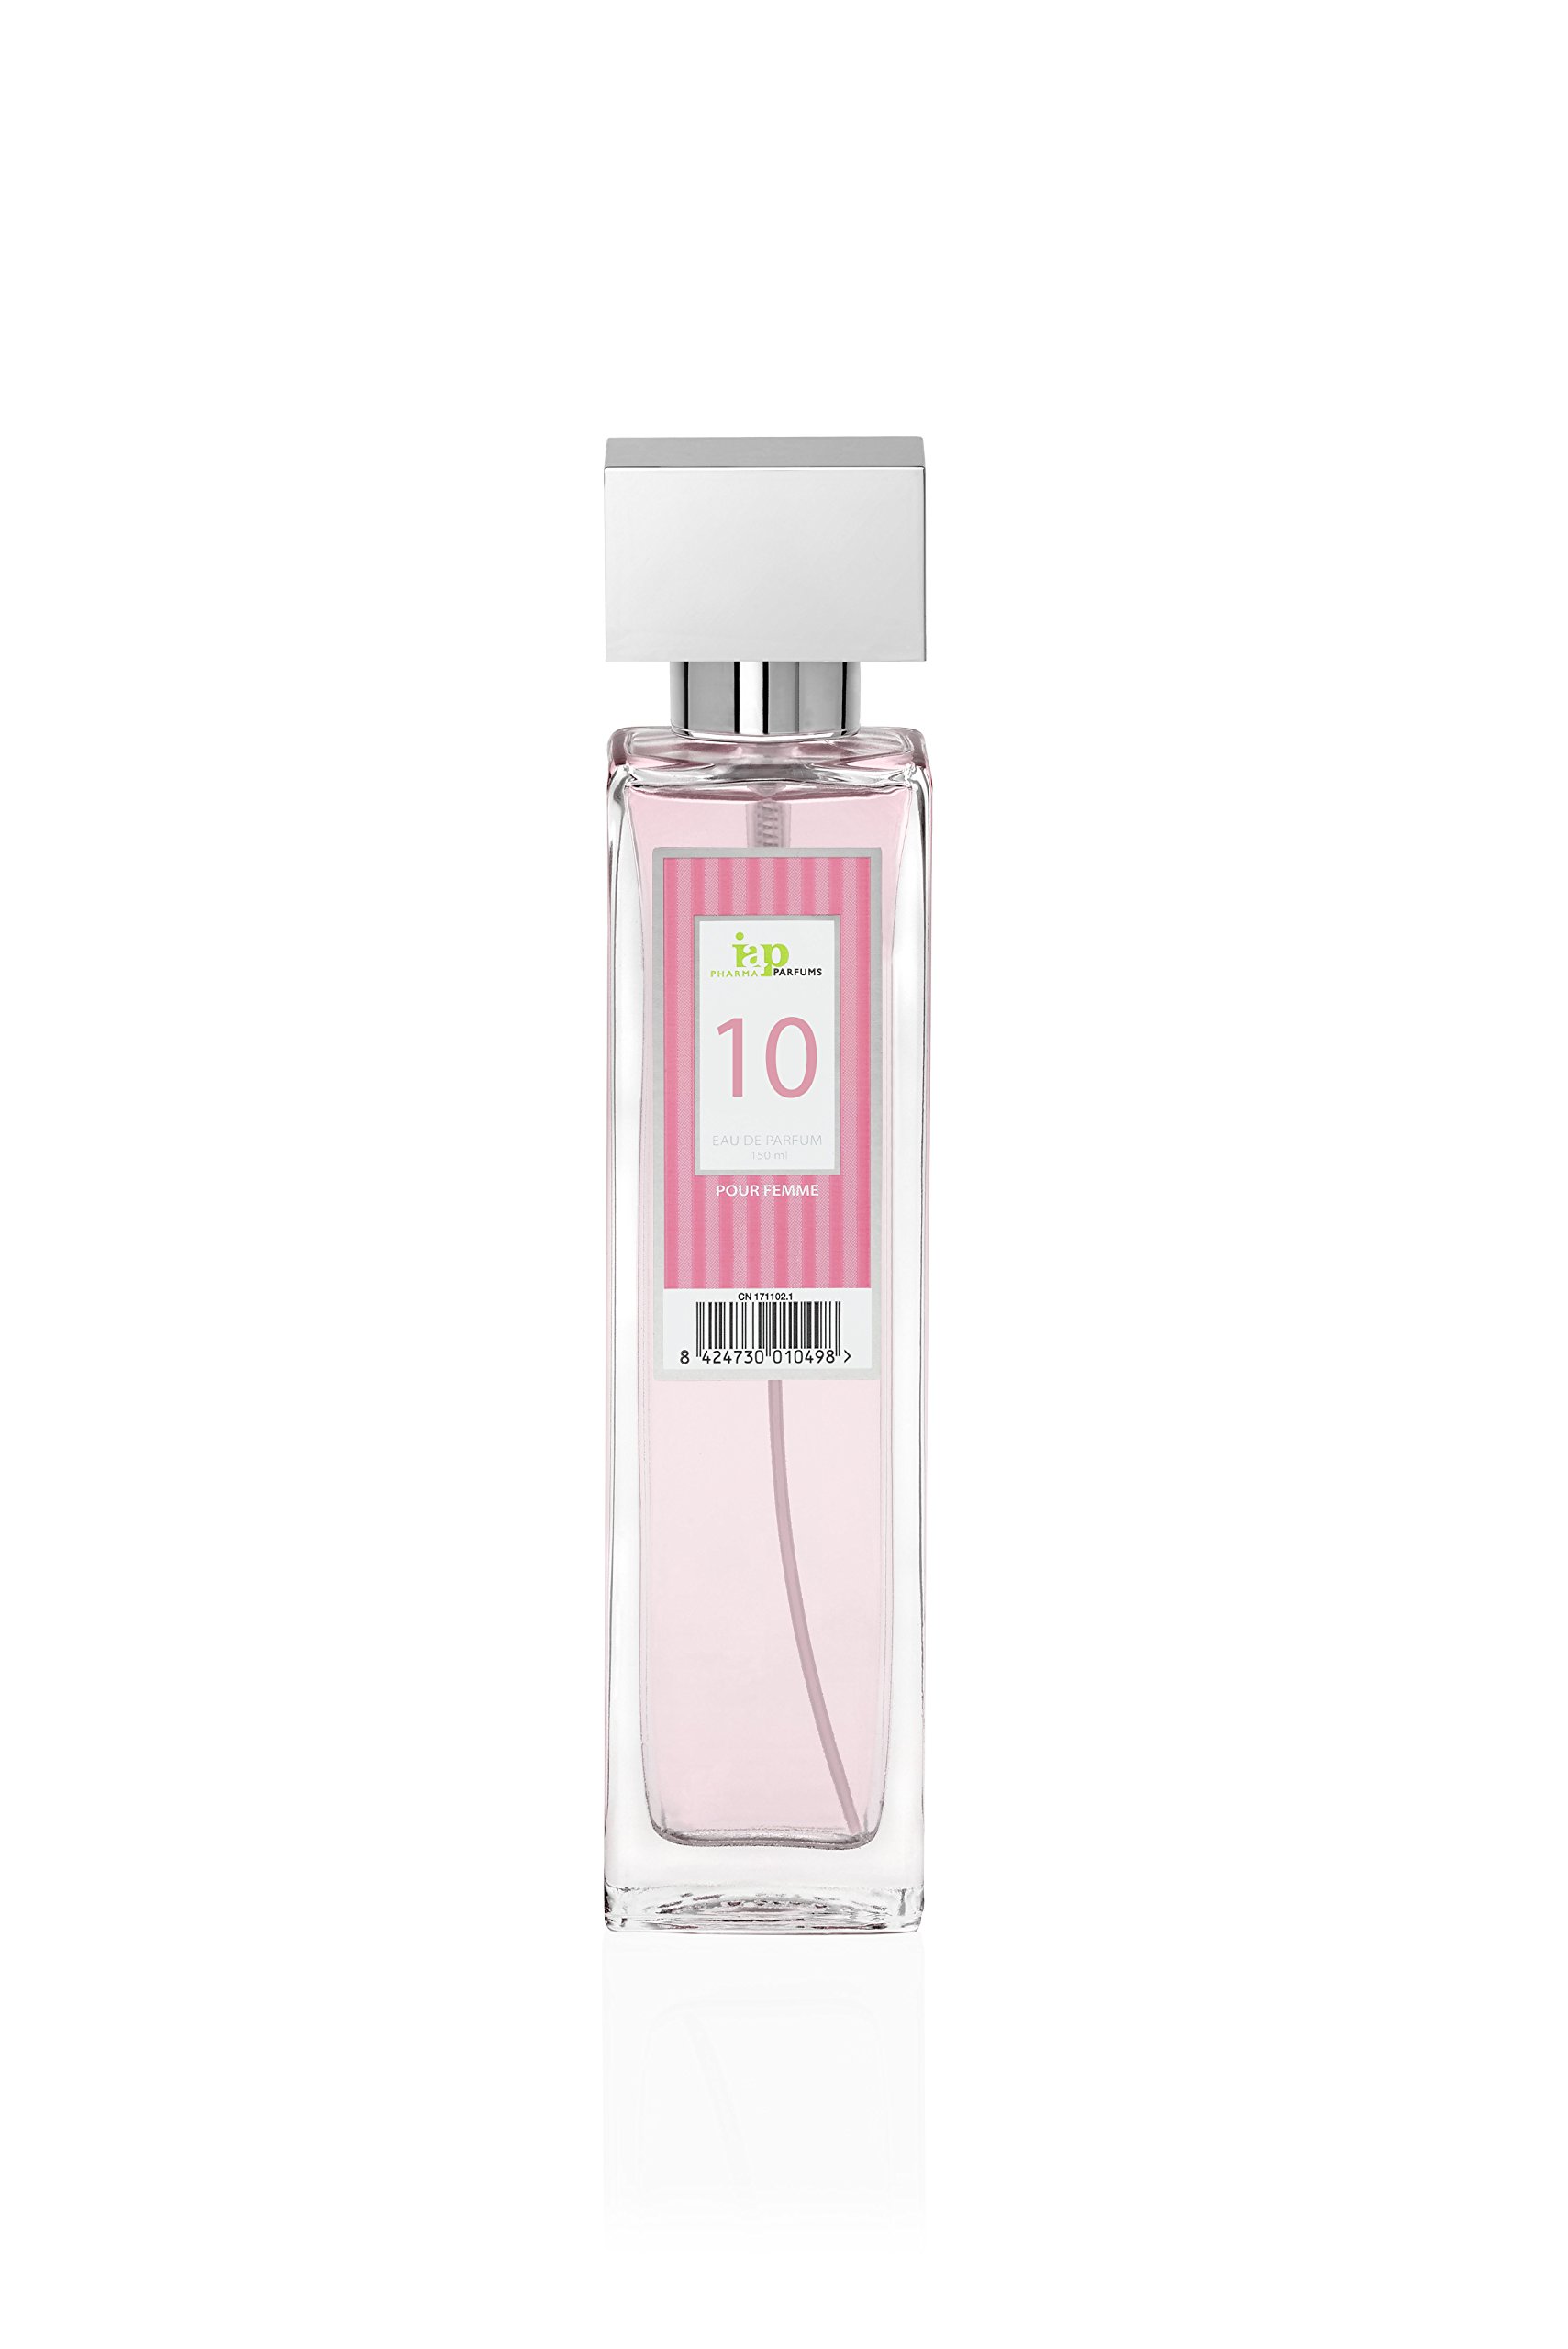 prix de gros IAP Pharma Parfums nº 10 - Eau de Parfum Vaporisateur Fleuri Femmes - 150 ml gEs2UHzBO vente chaude